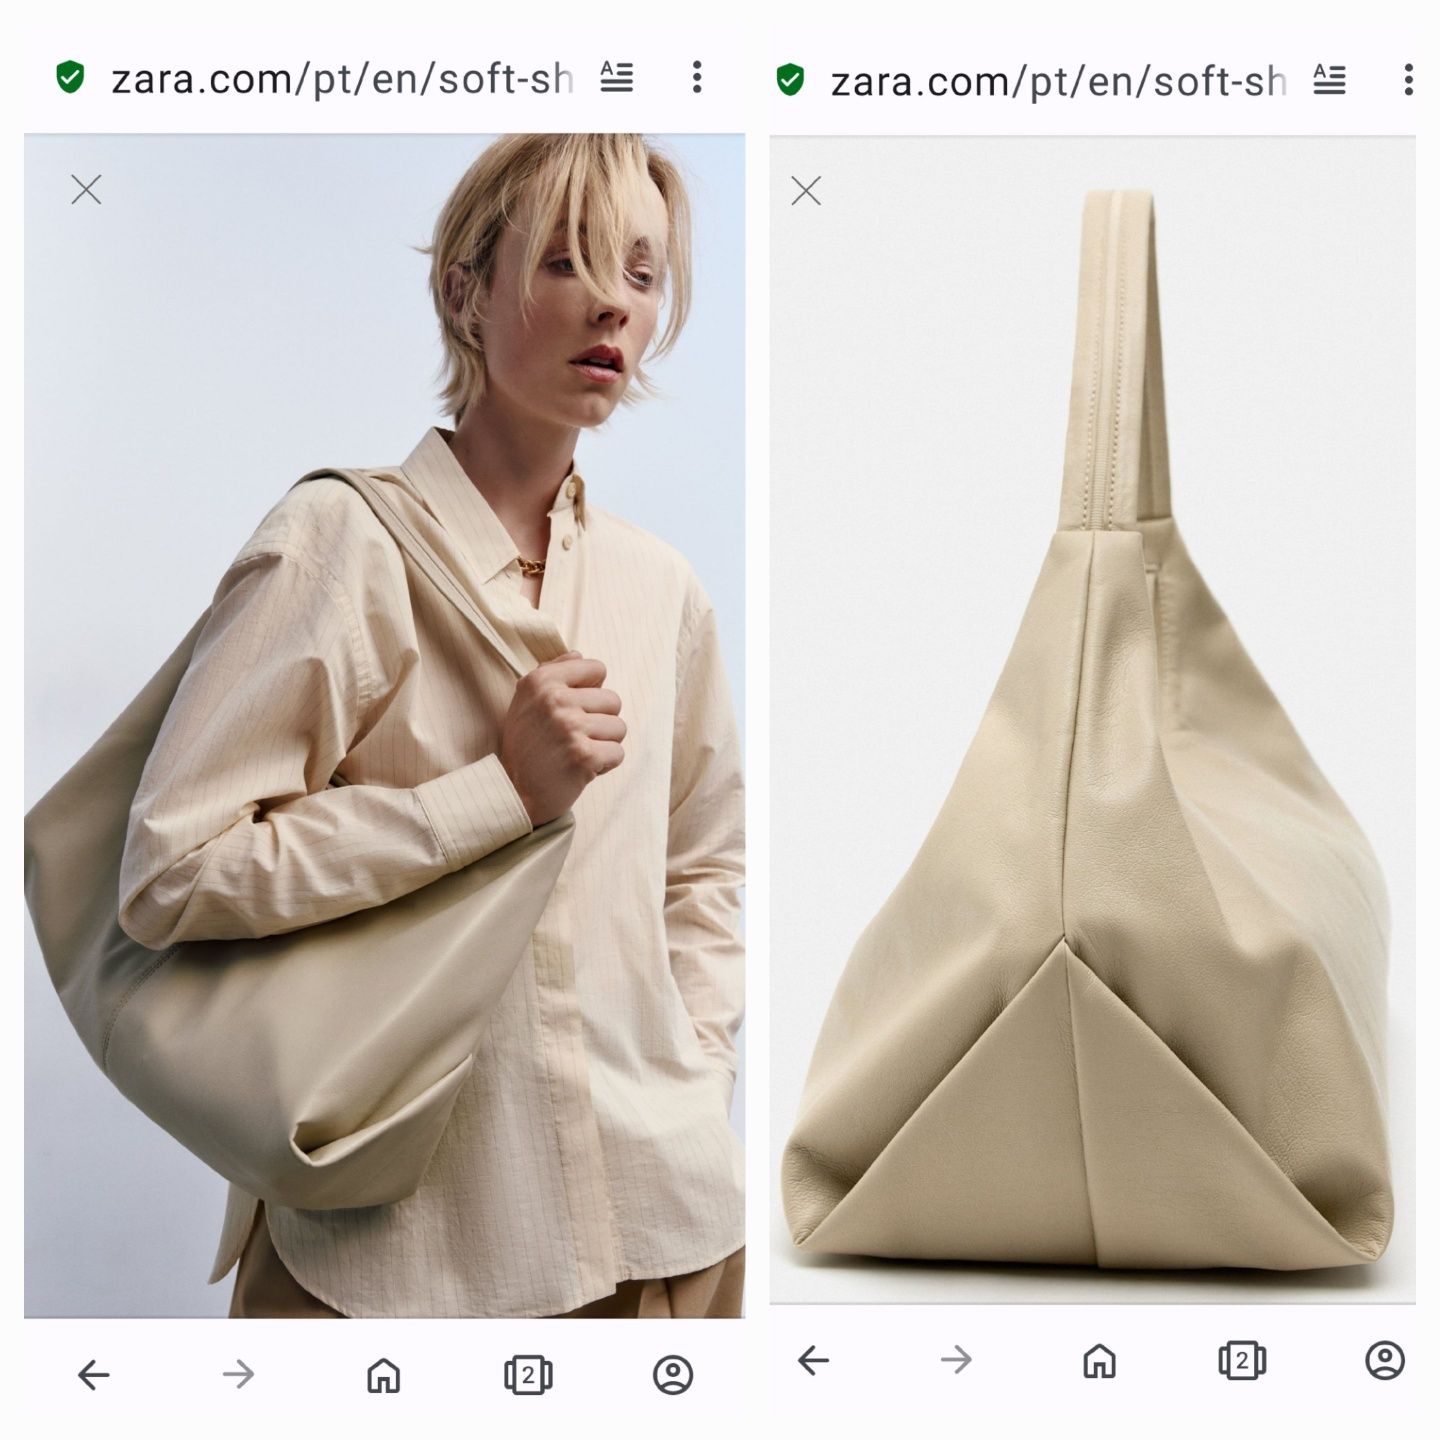 Нова м'ягесенька максі сумка Zara з веганської шкіри